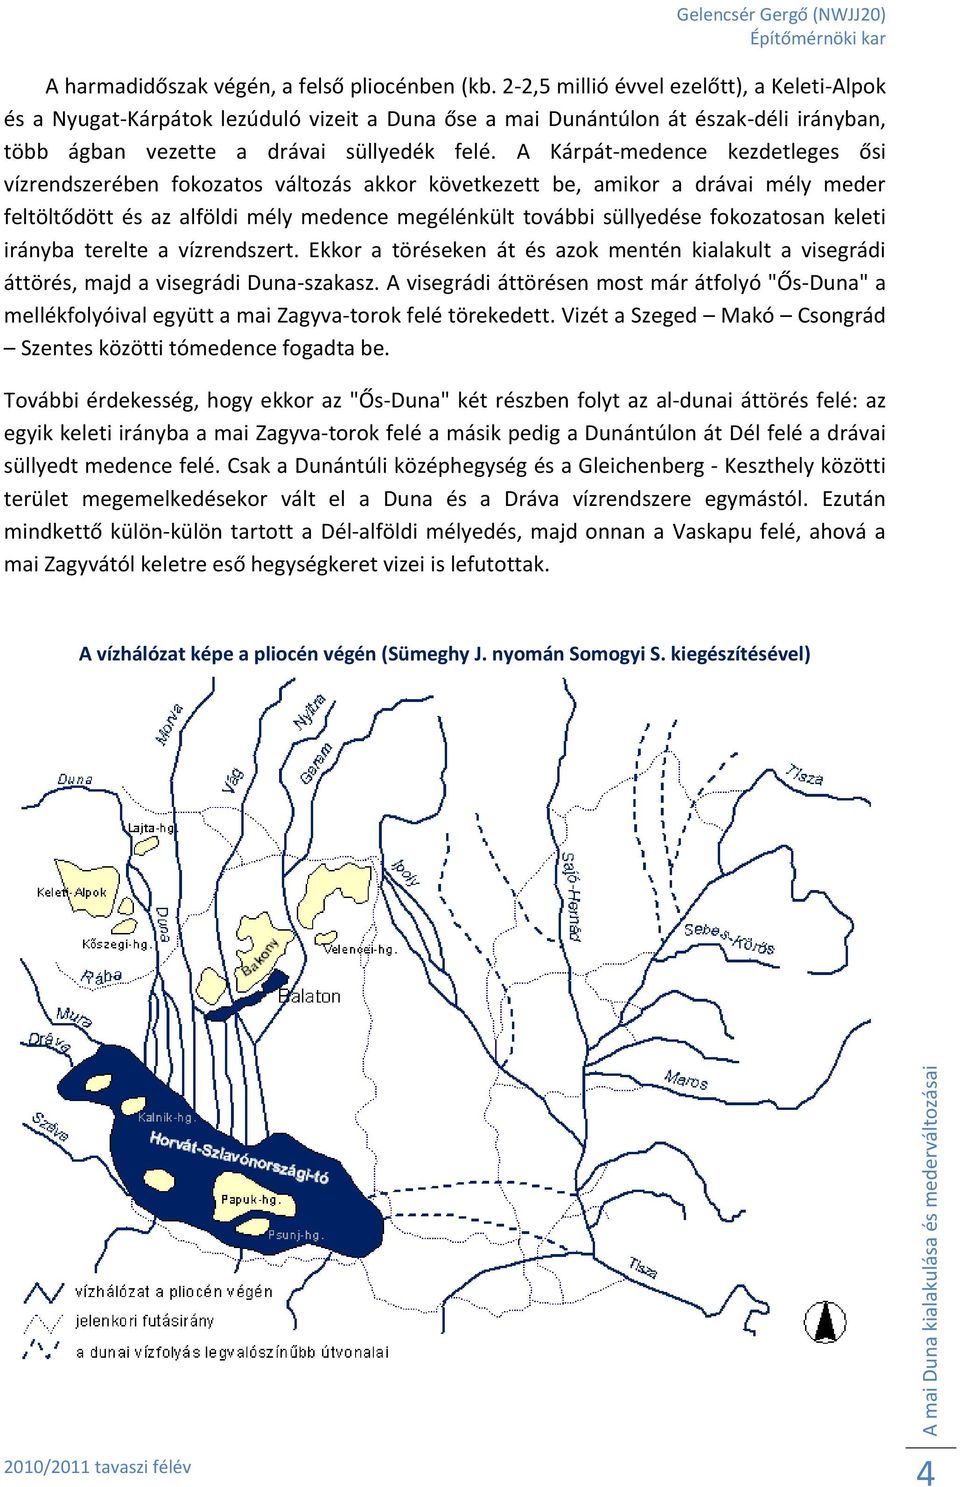 A Kárpát-medence kezdetleges ősi vízrendszerében fokozatos változás akkor következett be, amikor a drávai mély meder feltöltődött és az alföldi mély medence megélénkült további süllyedése fokozatosan